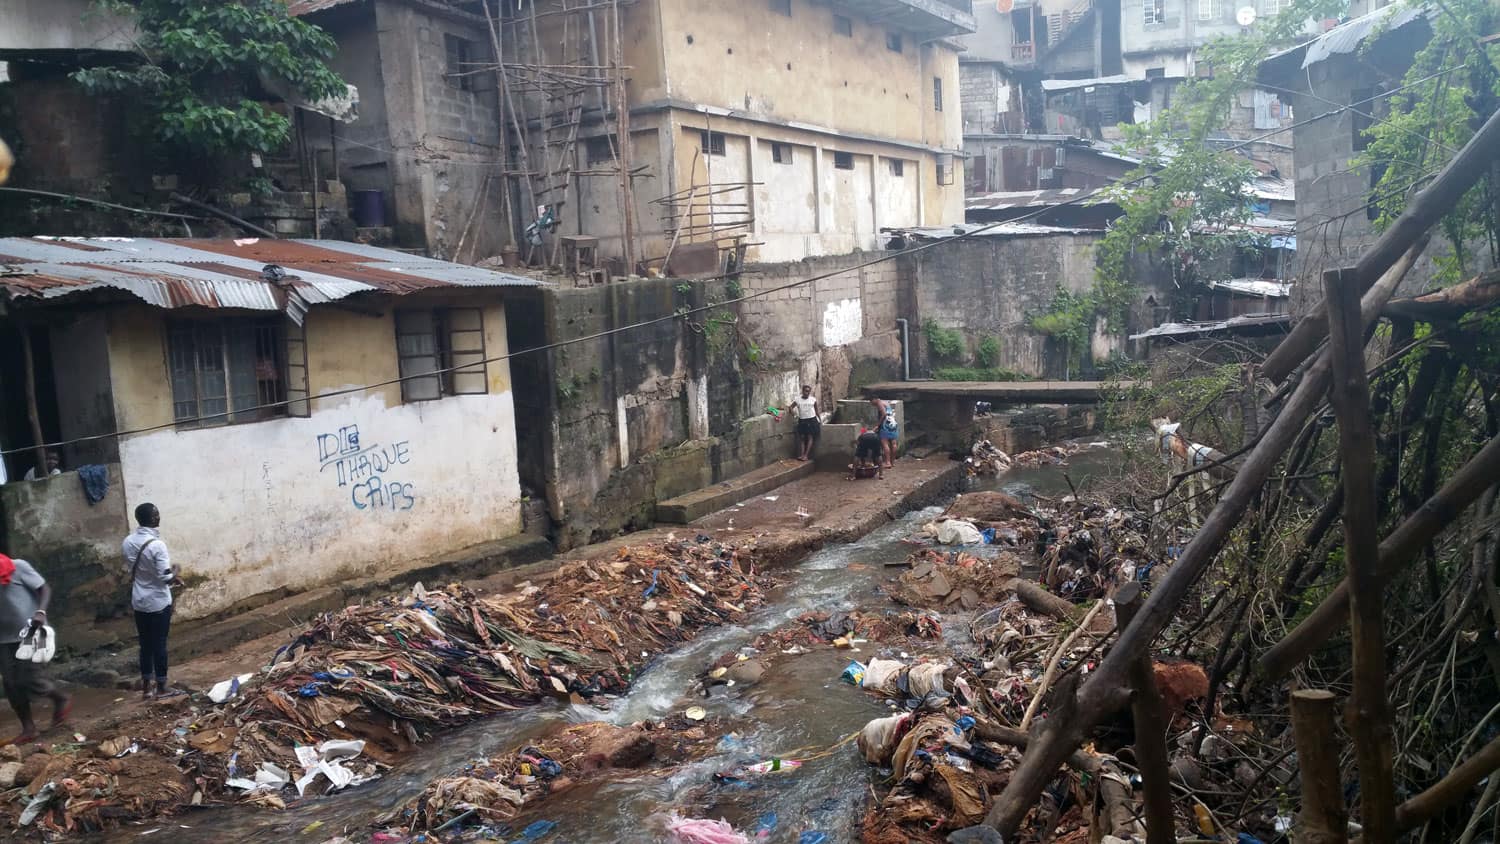 Calle con residuos arrastrados por la corriente - Proyecto Prevenir desde la Familia de Child Heroes